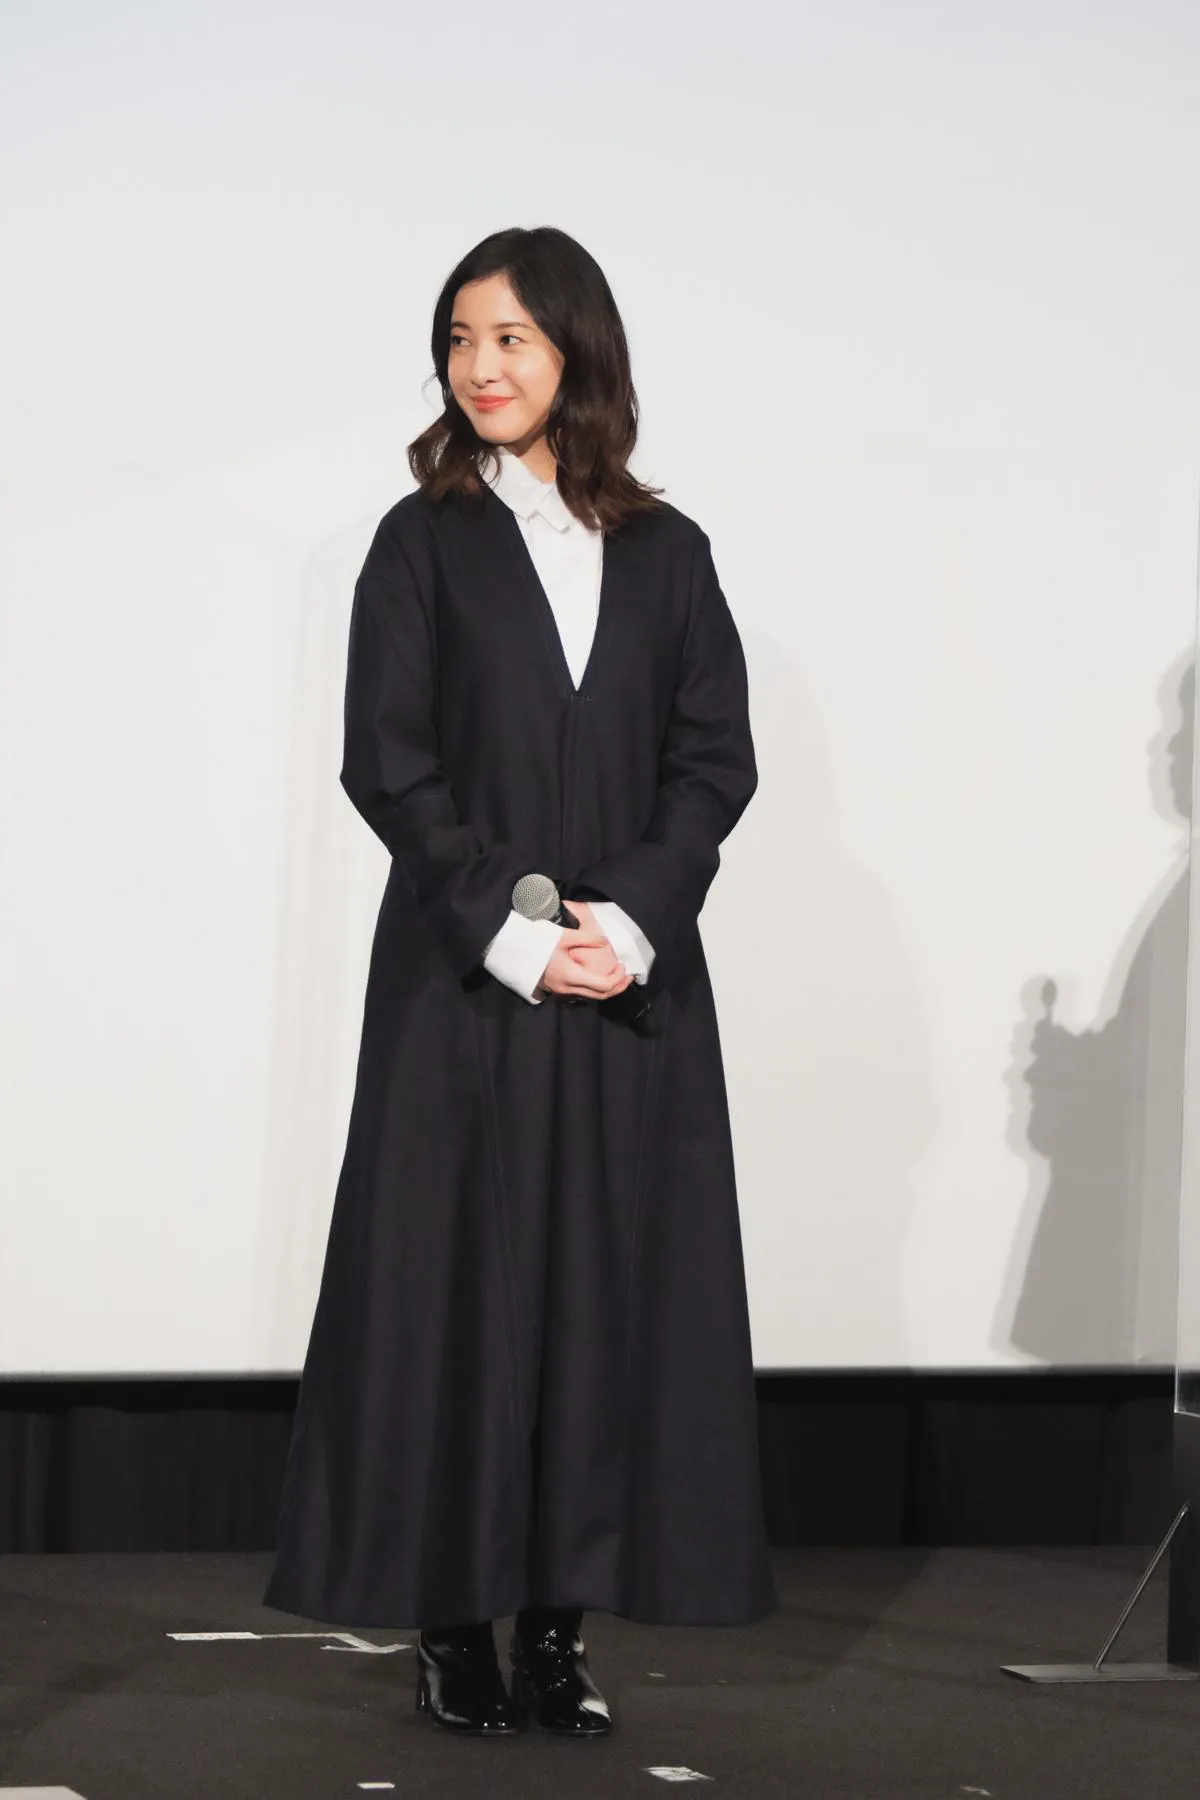 【写真を見る】吉高由里子がシックな黒の衣装で大人の女性姿を披露